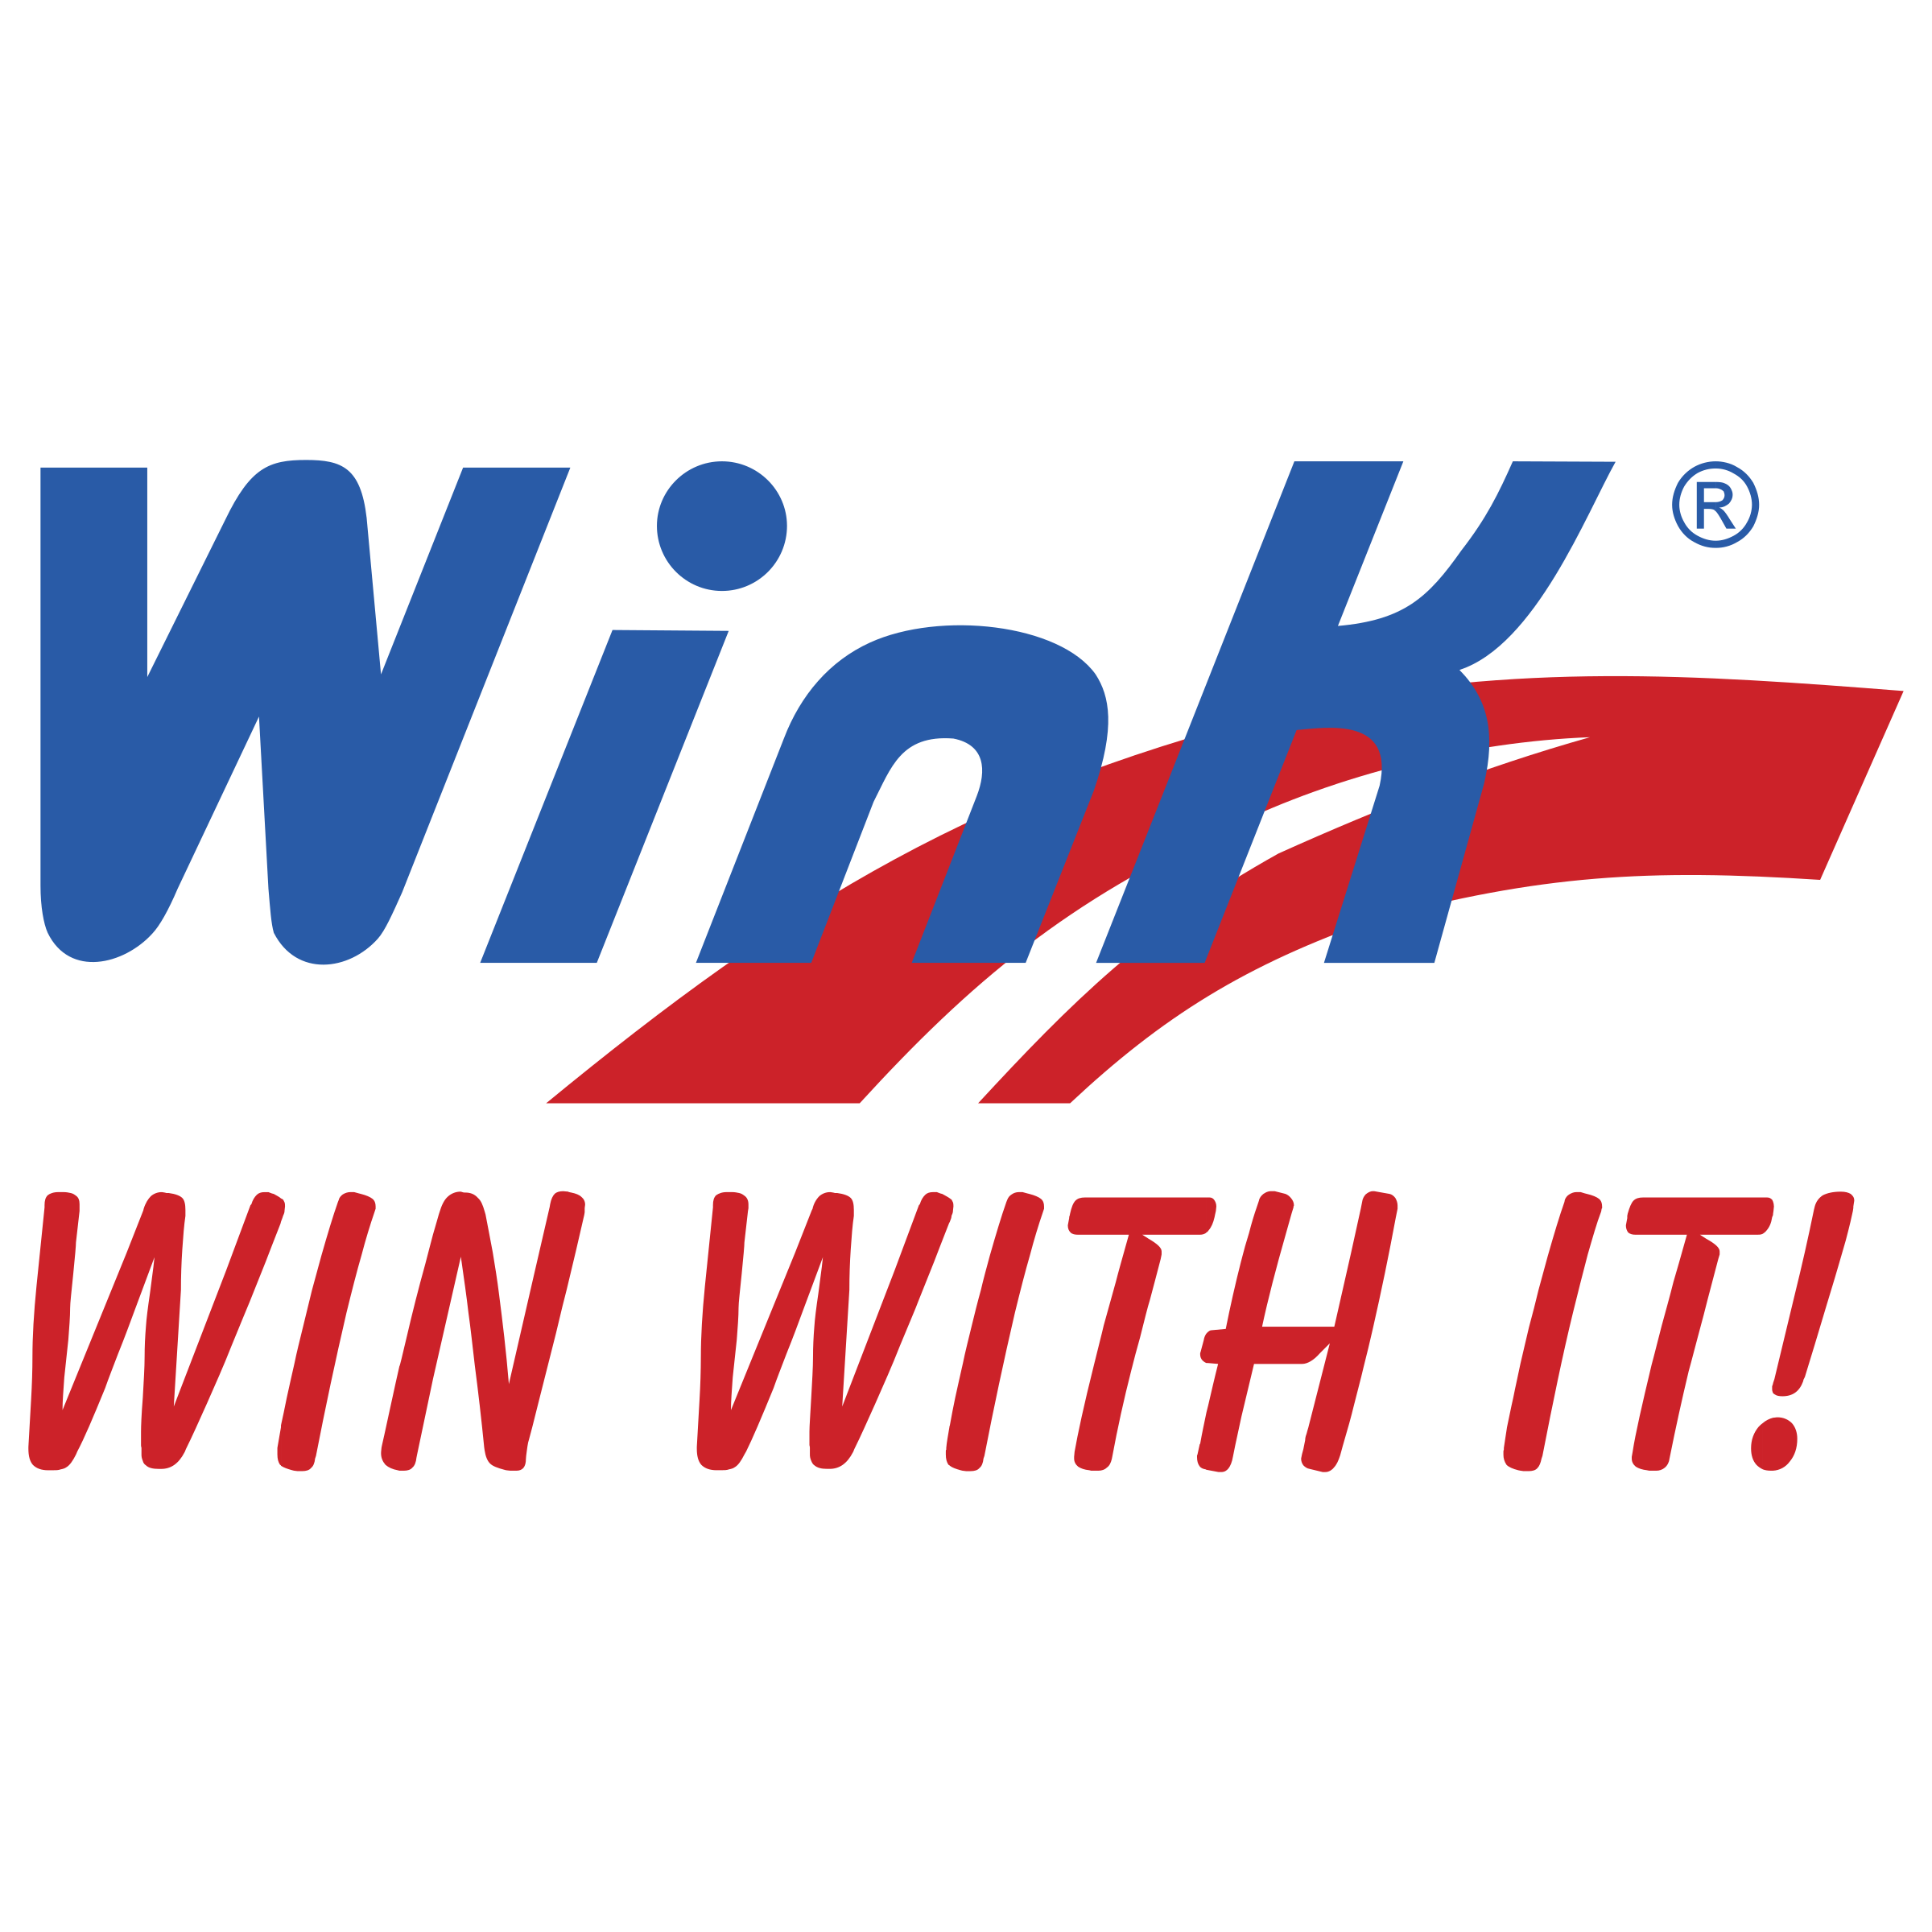 Wink Logo - Wink Logo PNG Transparent & SVG Vector - Freebie Supply